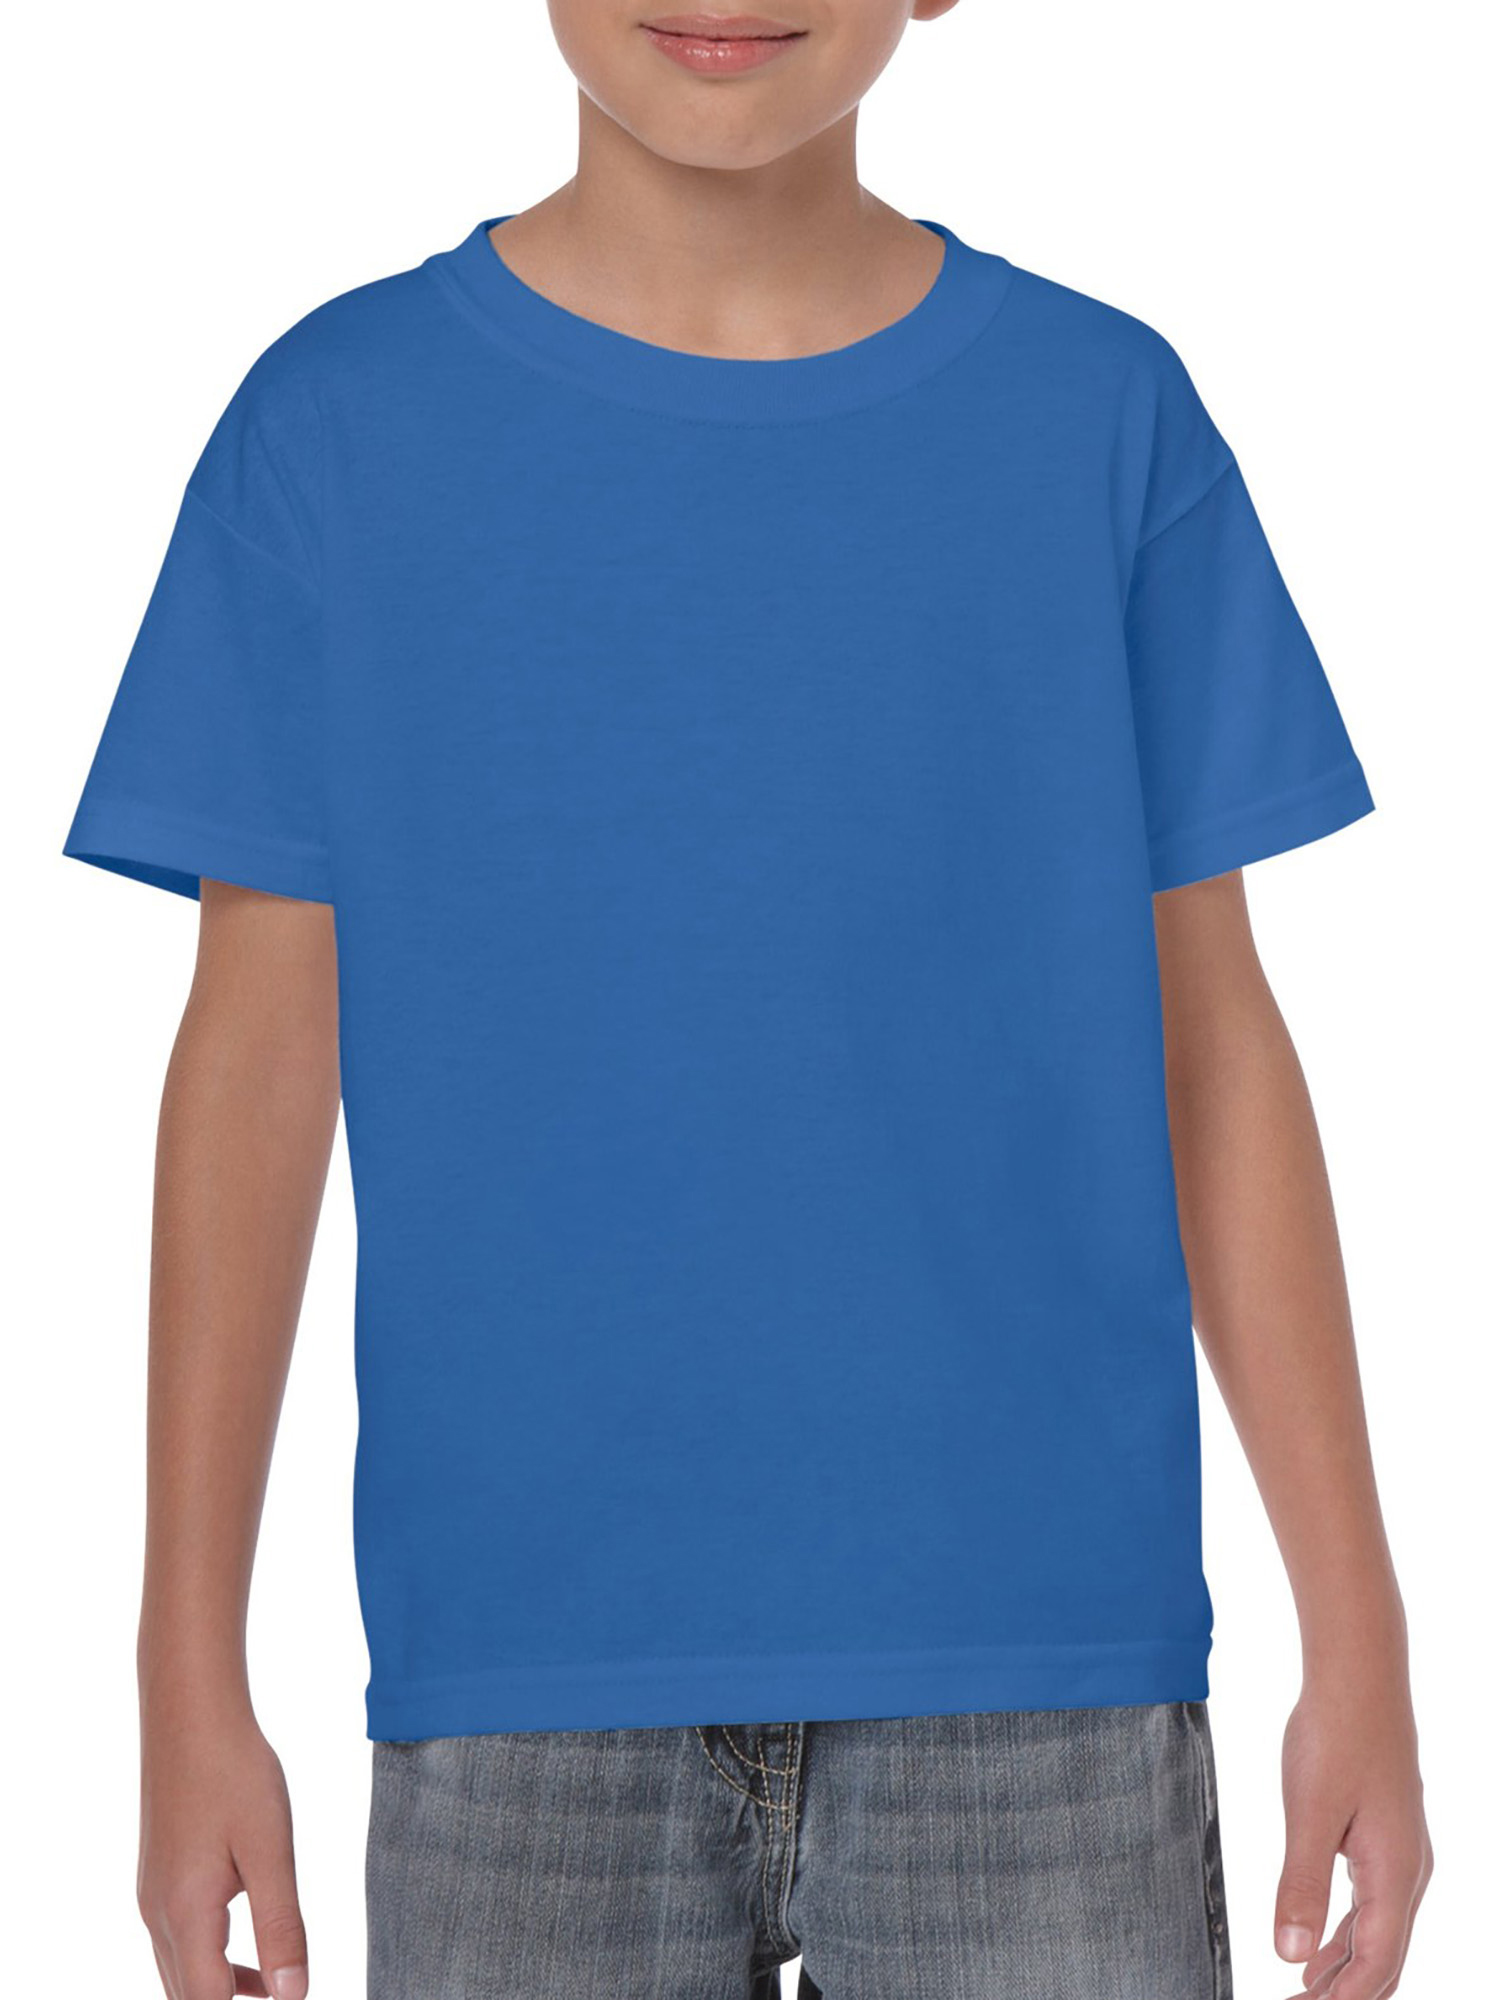 Gildan Adult Cotton Short Sleeve Blue Crew T-Shirt, 1-Pack, Small -  Walmart.com